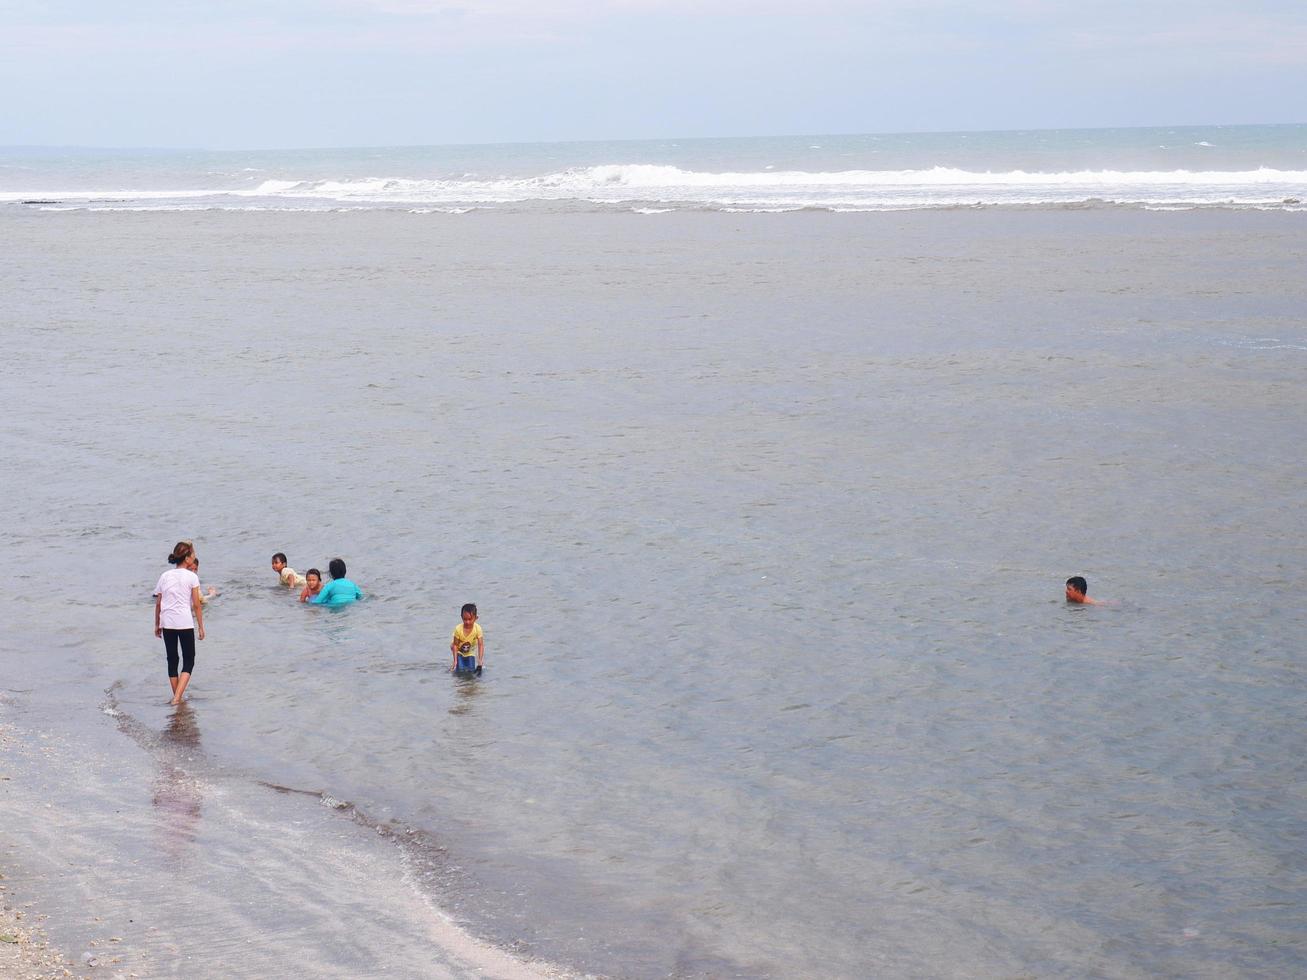 garut, indonésia-12 de dezembro de 2022 pessoas que estão brincando e nadando em uma bela praia tropical com céu azul e fundo de textura abstrata de nuvens brancas. área de praia foto